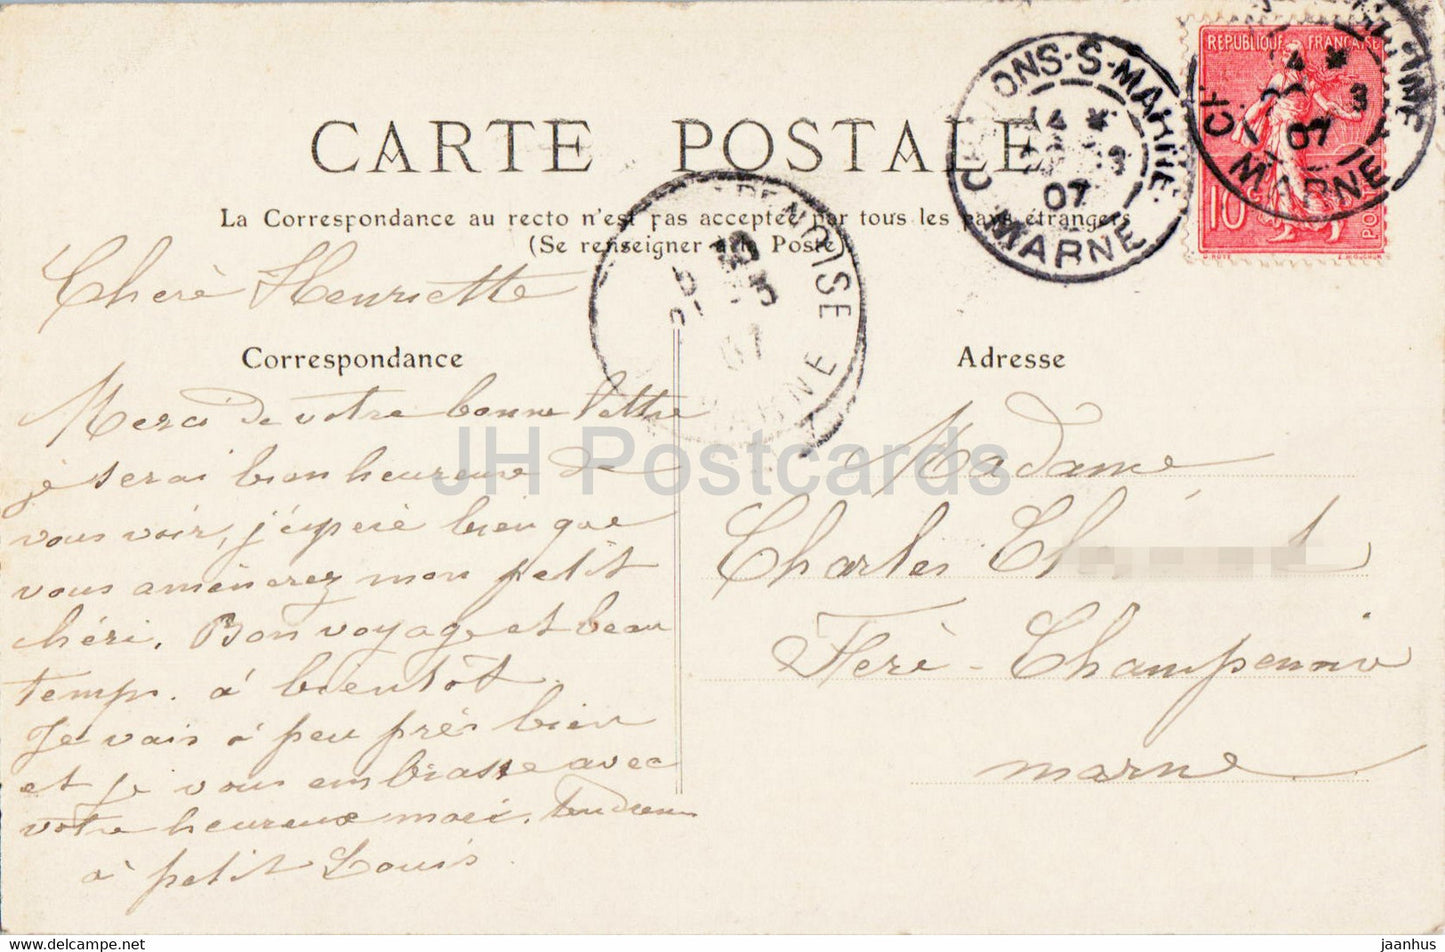 Chalons sur Marne - Monument Gloria Victis - De Mercee - devant la Cathedrale - 81 - alte Postkarte - 1907 - Frankreich - gebraucht